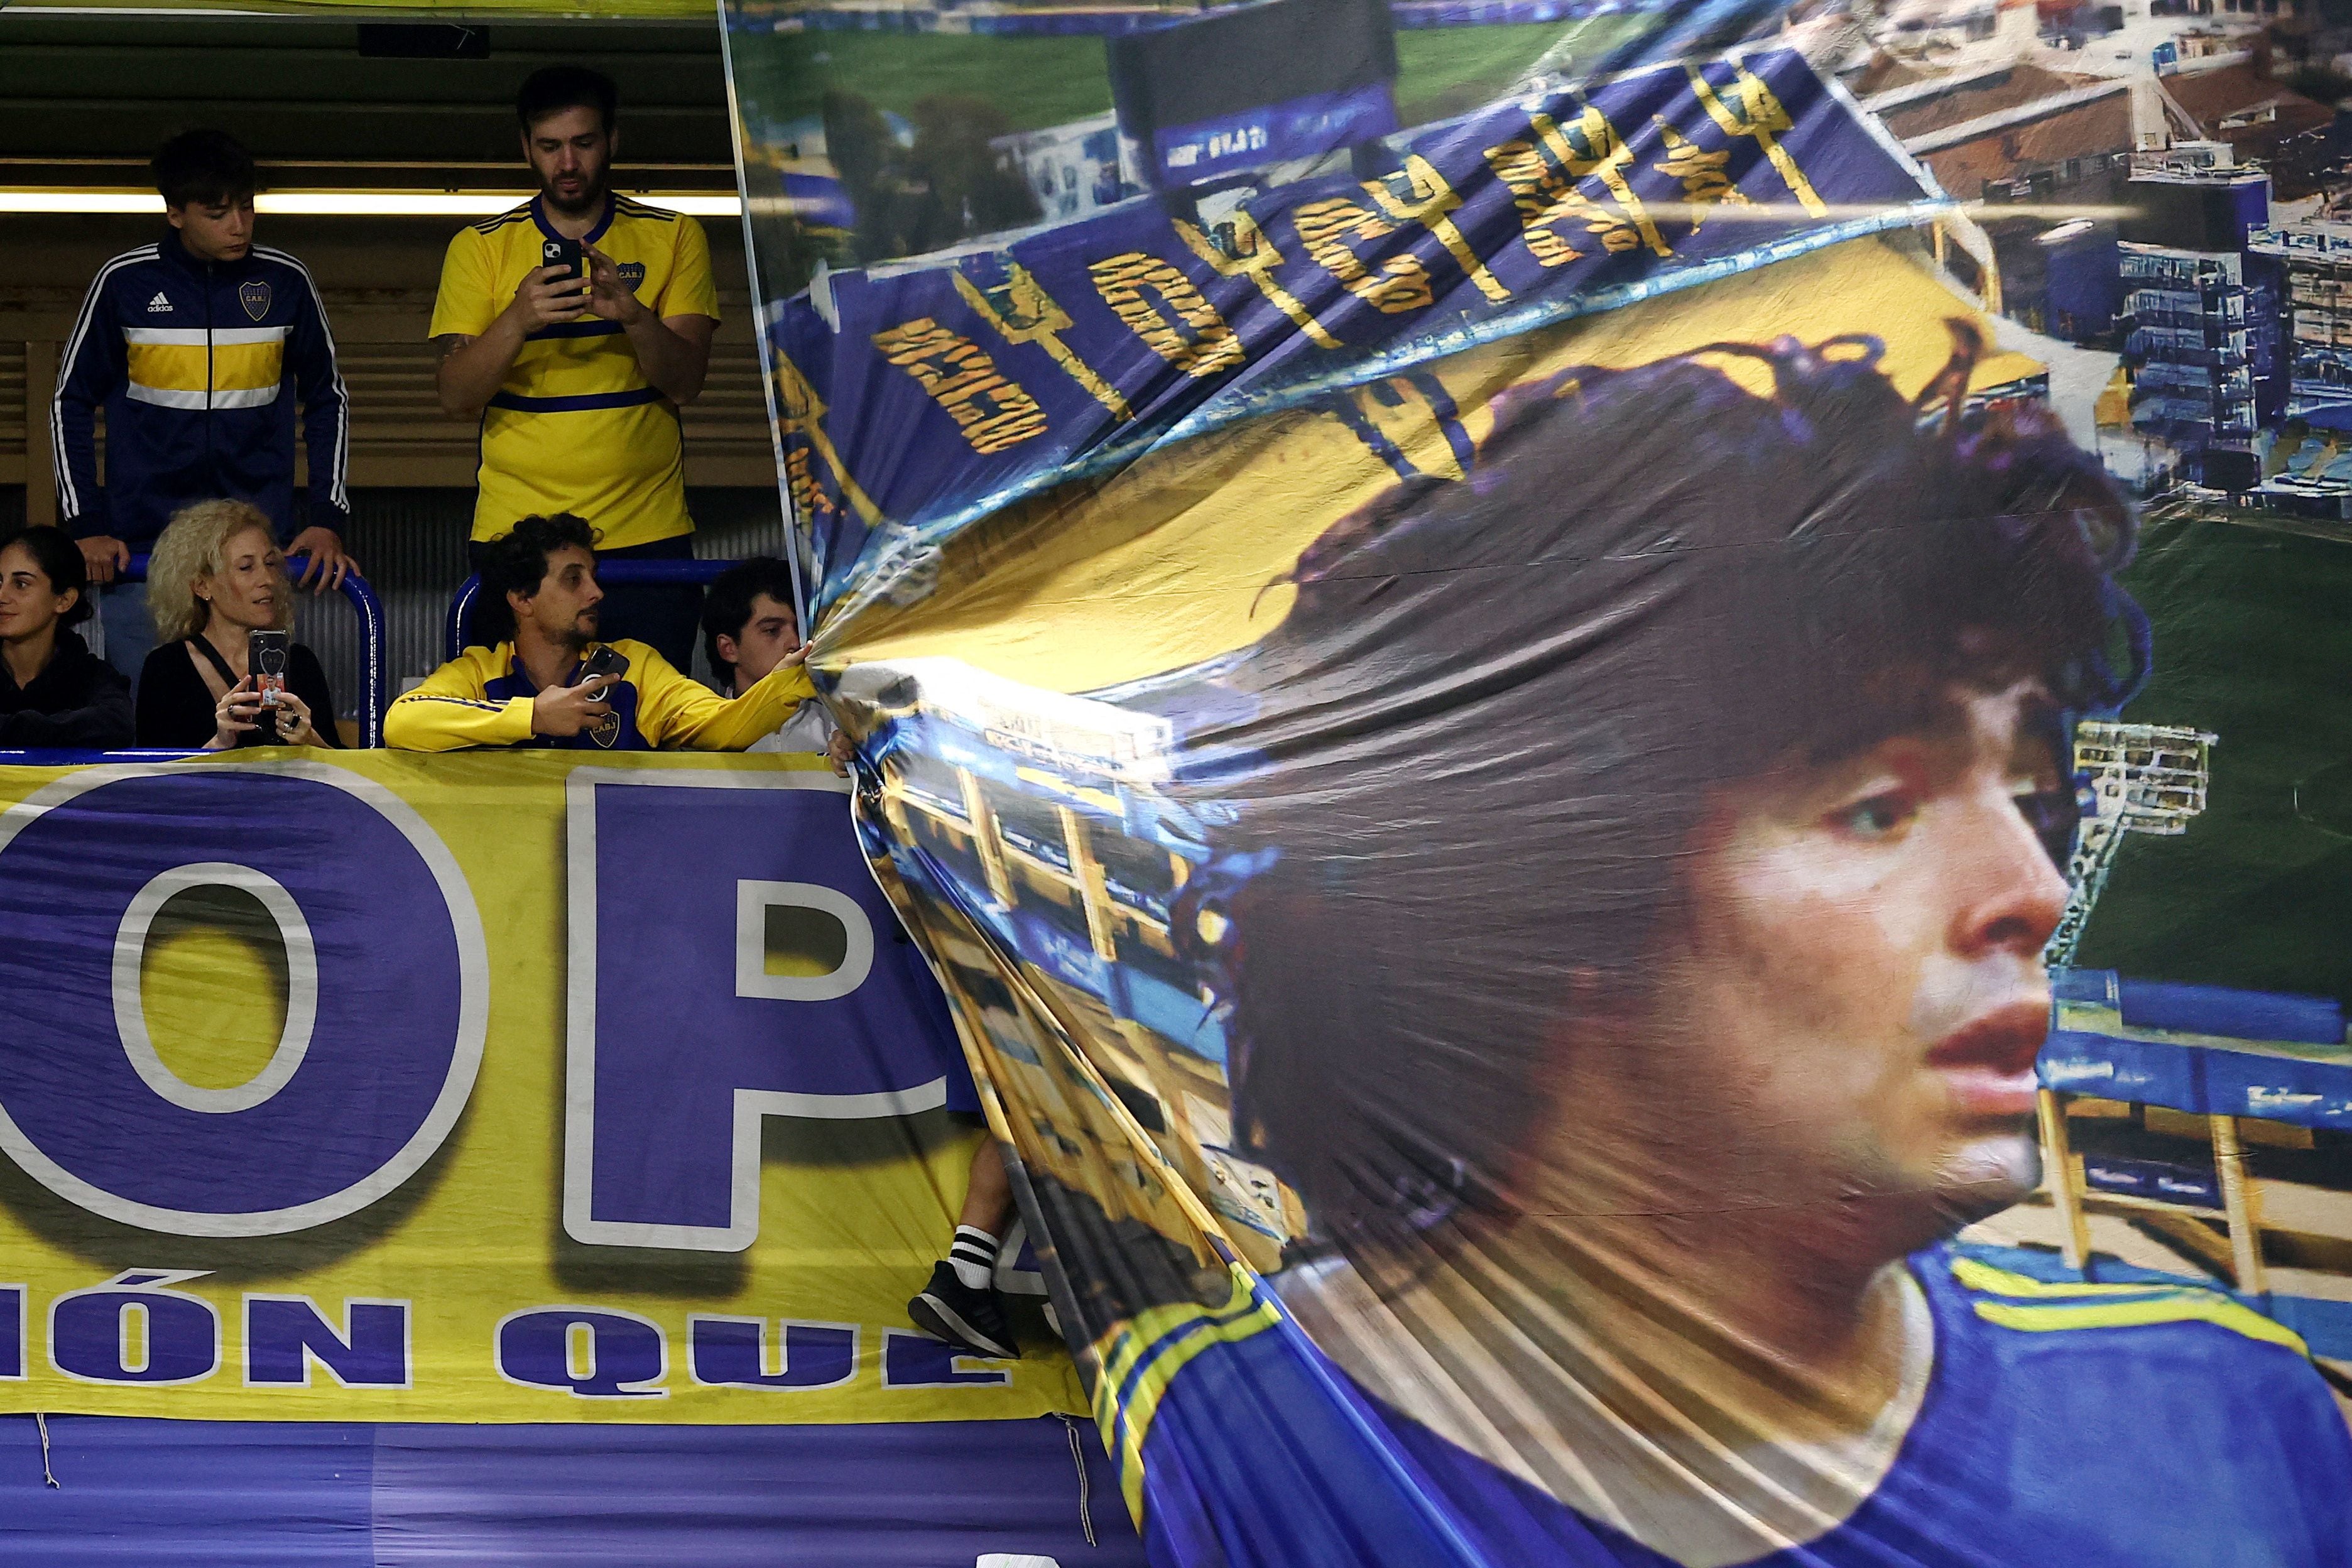 Los hinchas de Boca desplegaron una bandera de Diego Maradona durante el recibimiento al equipo (REUTERS/Agustin Marcarian)